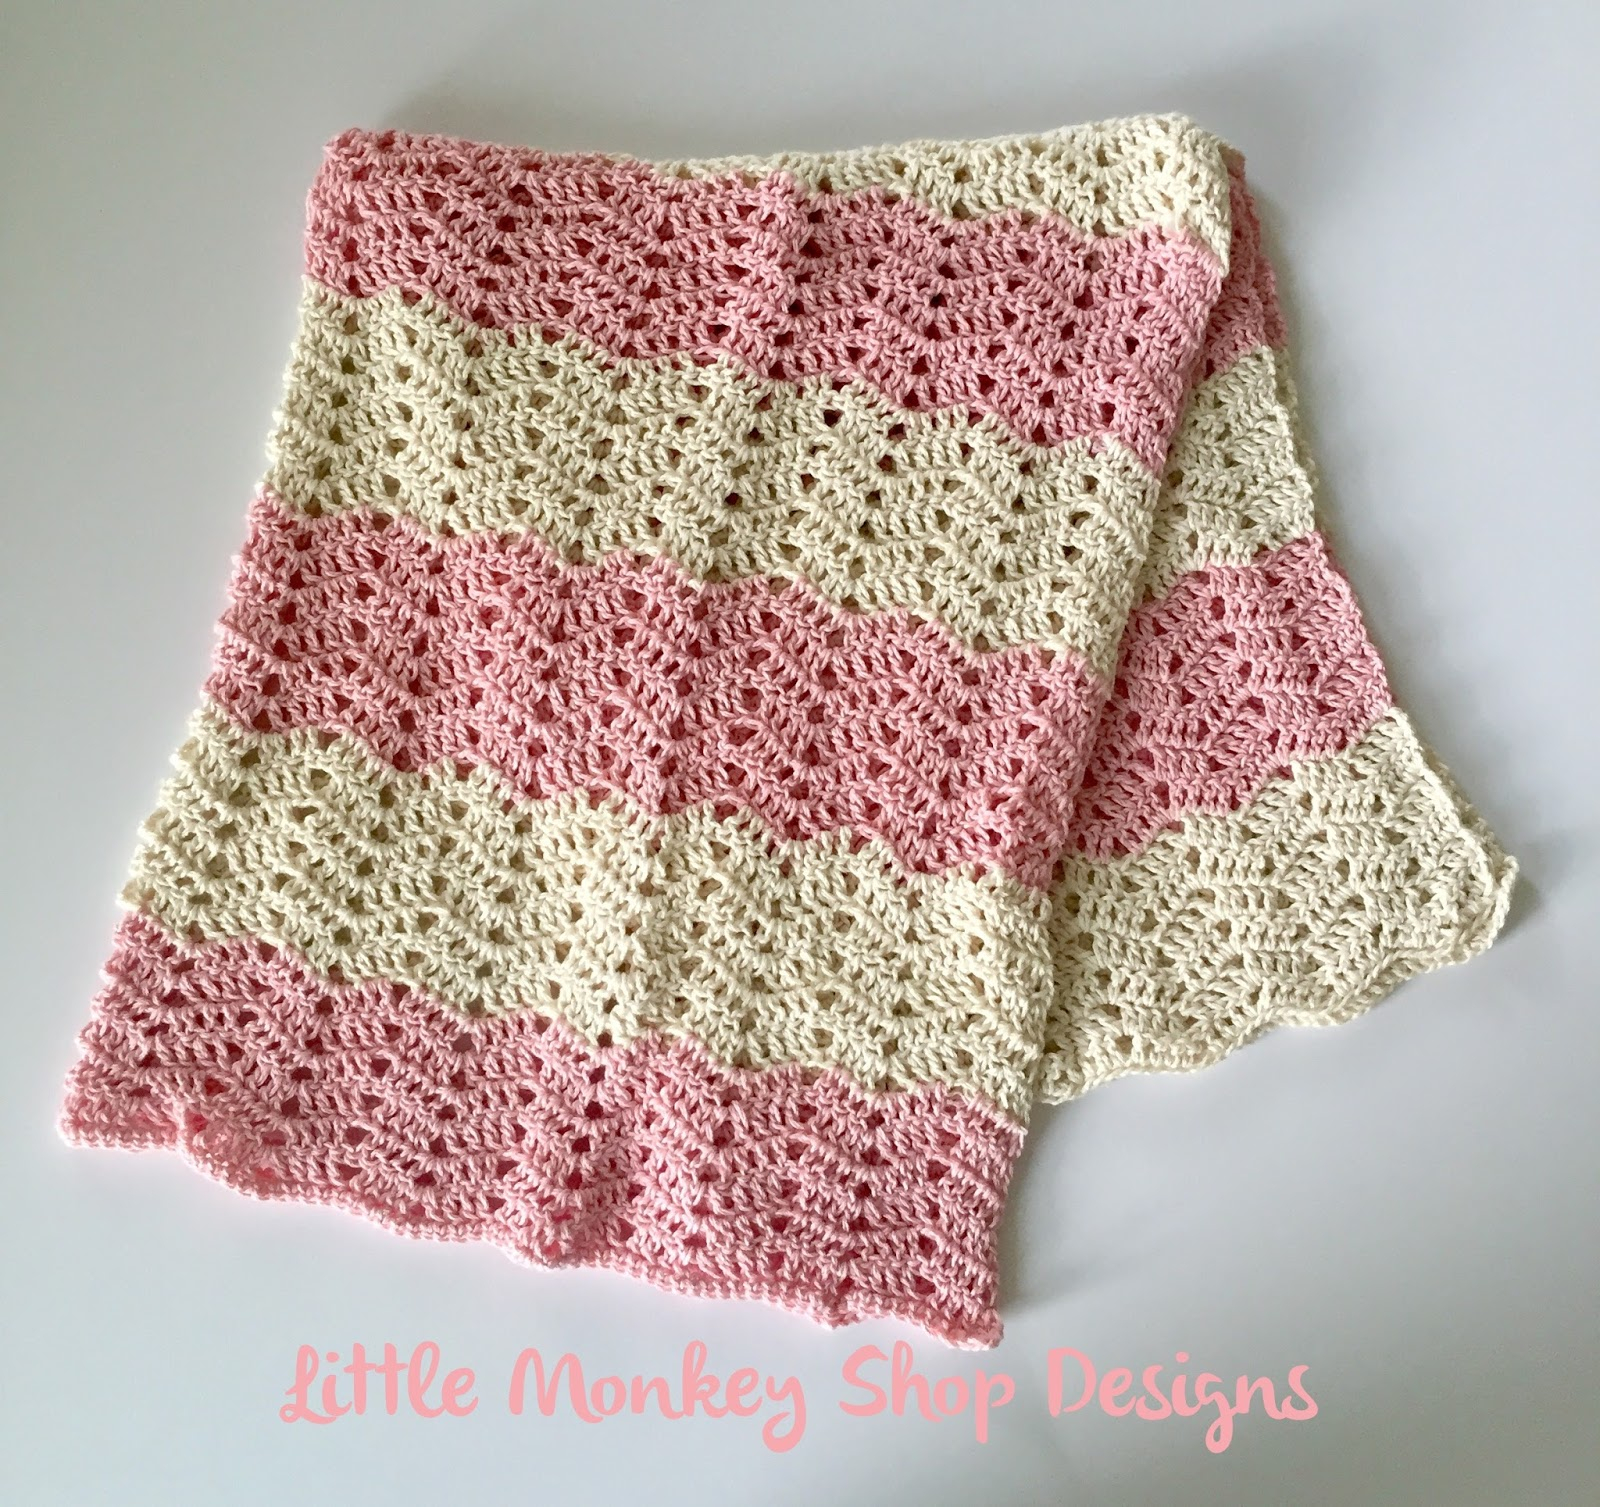 Crochet Pattern For Baby Blanket Peek A Boo Chevron Crochet Ba Blanket Design Little Monkey Shop